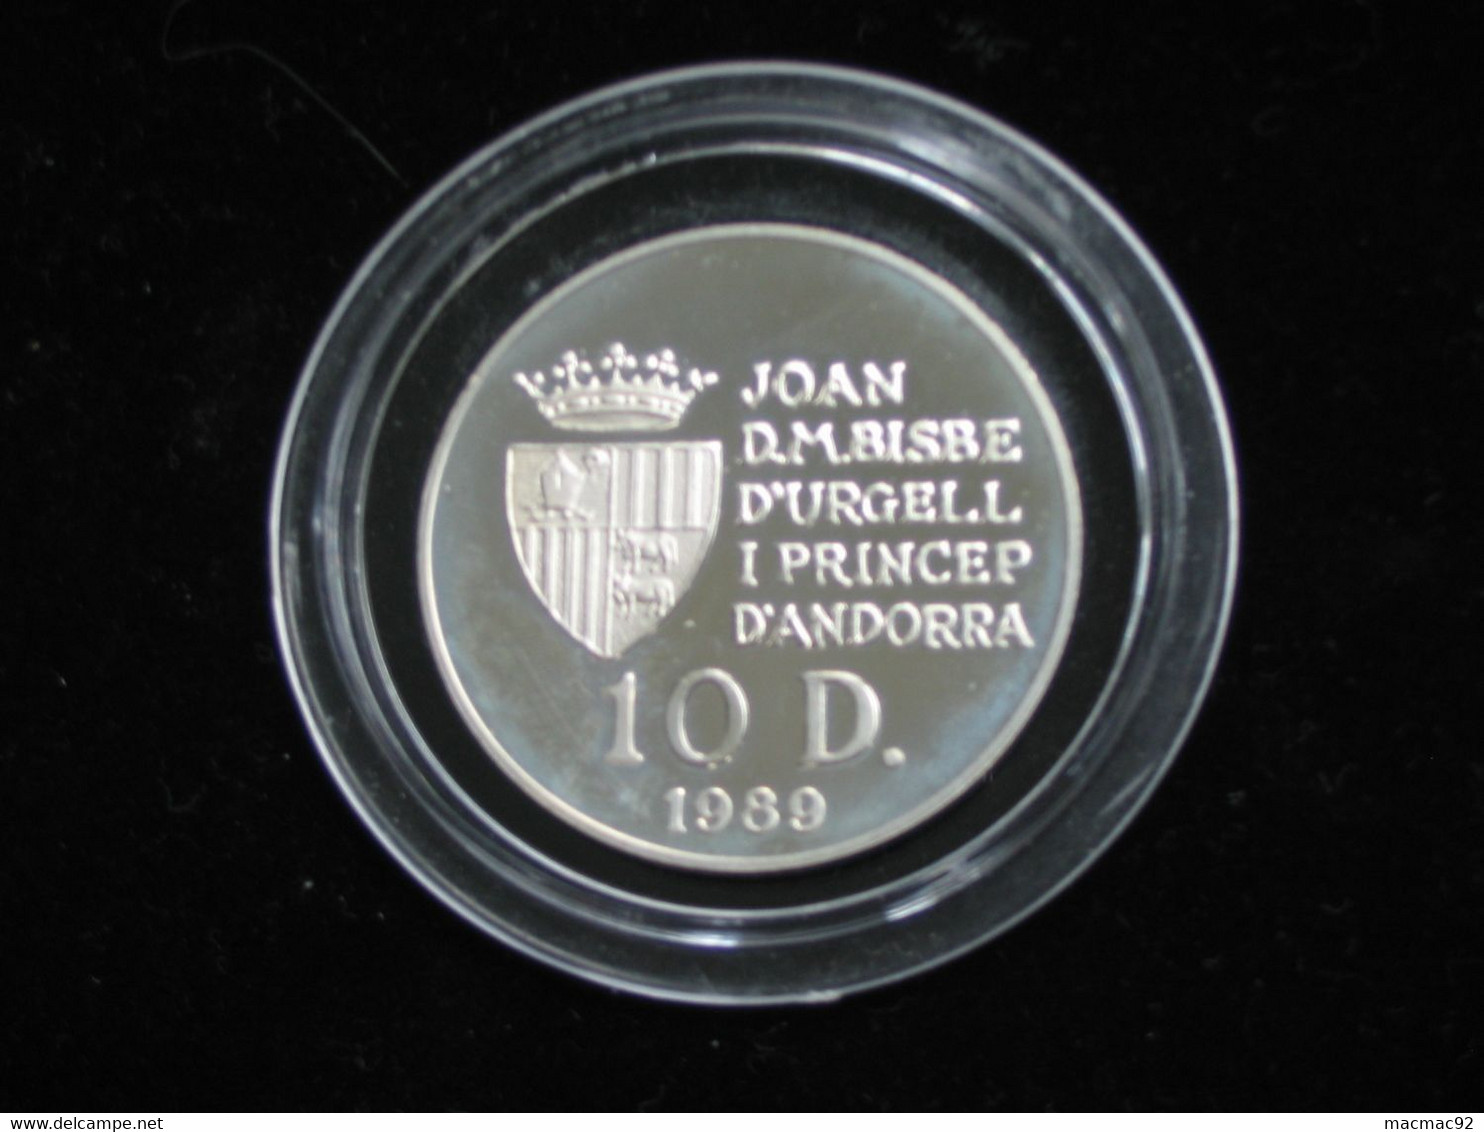 Médaille En Argent Pur - XXV Olimpiada Barcelona 1992 - Joan D.M.Bisbe D'Urgell I Princep   **** EN ACHAT IMMEDIAT **** - Professionnels / De Société